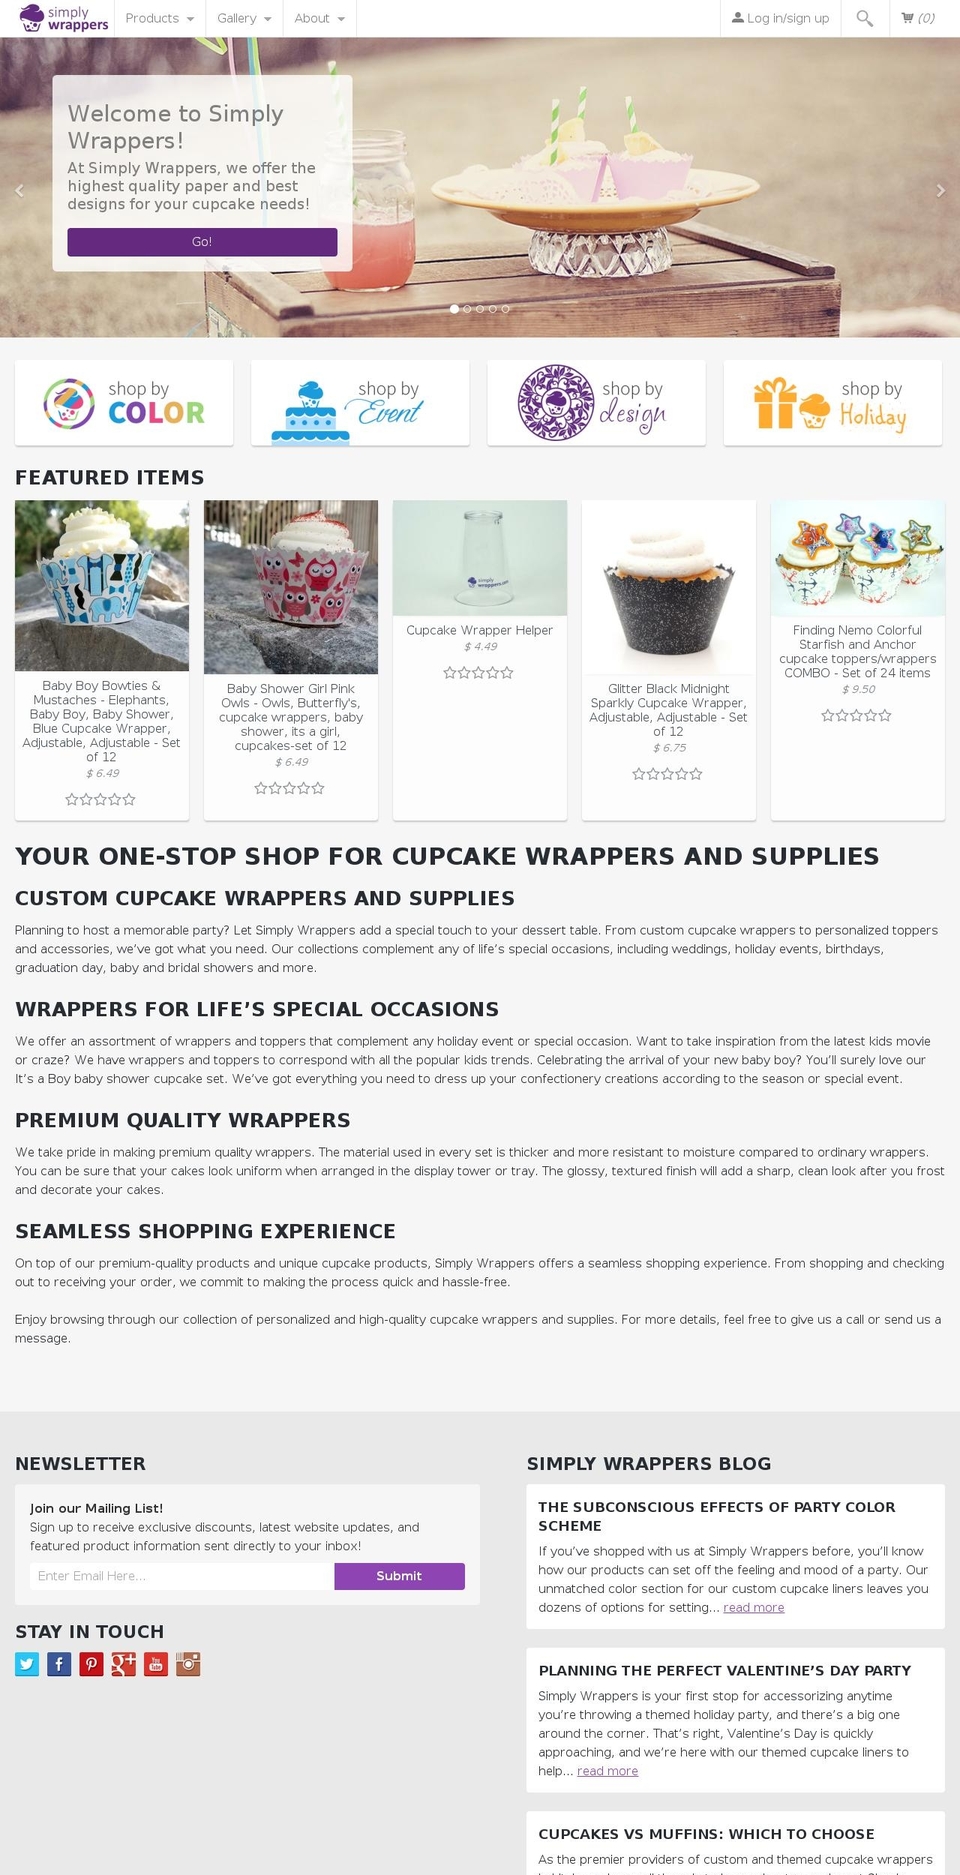 simplywrappers.com shopify website screenshot